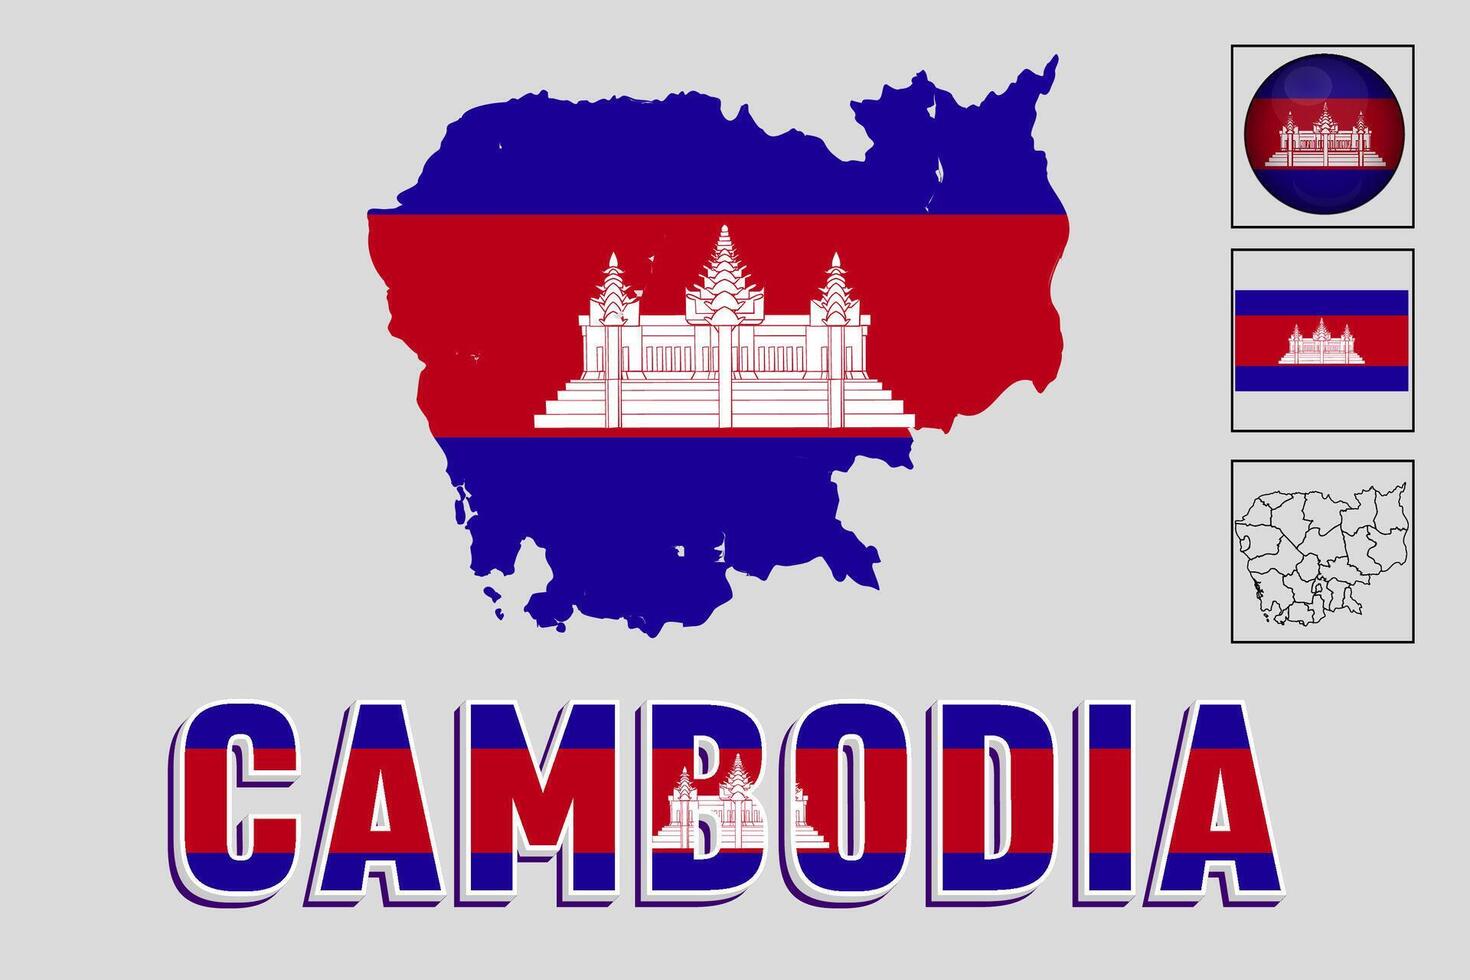 Cambogia carta geografica e bandiera nel vettore illustrazione